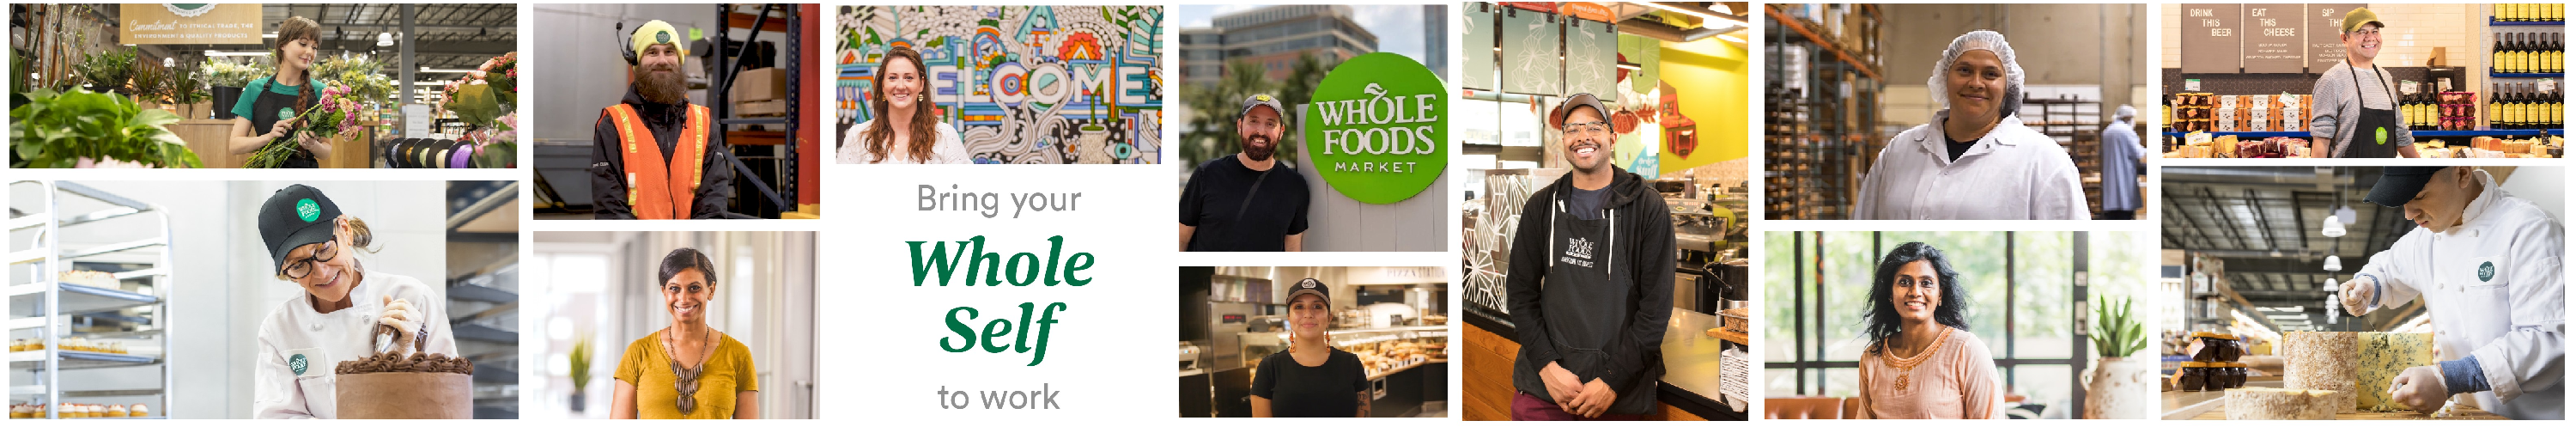 Whole Foods Market background